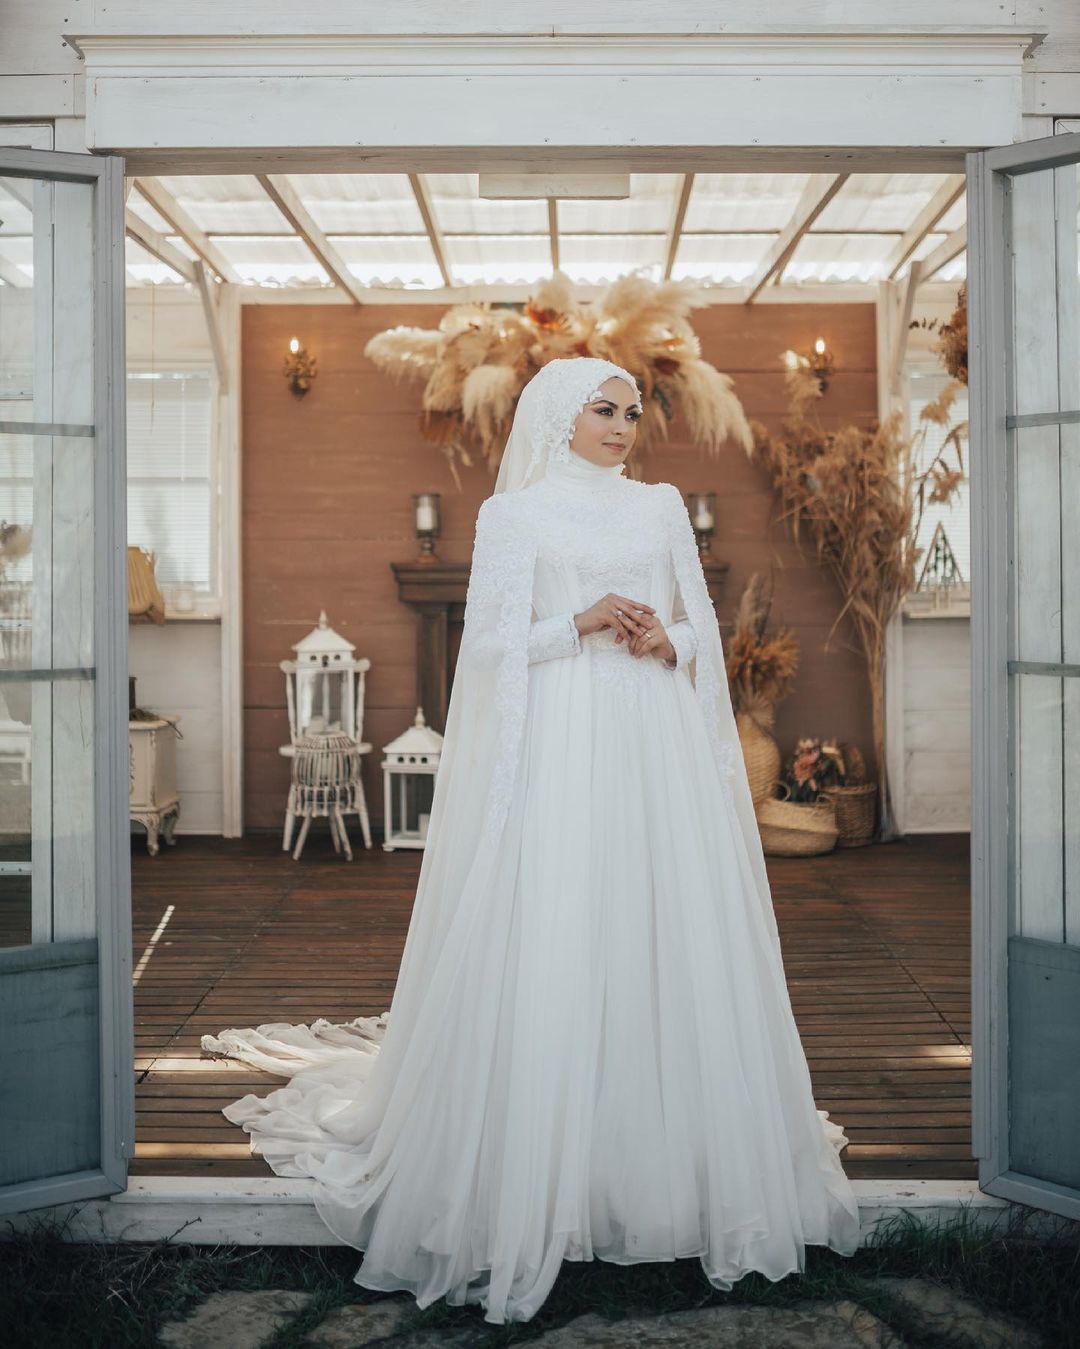 أجمل فساتين زفاف لعروس العيد موضة 2021 | مجلة الجميلة